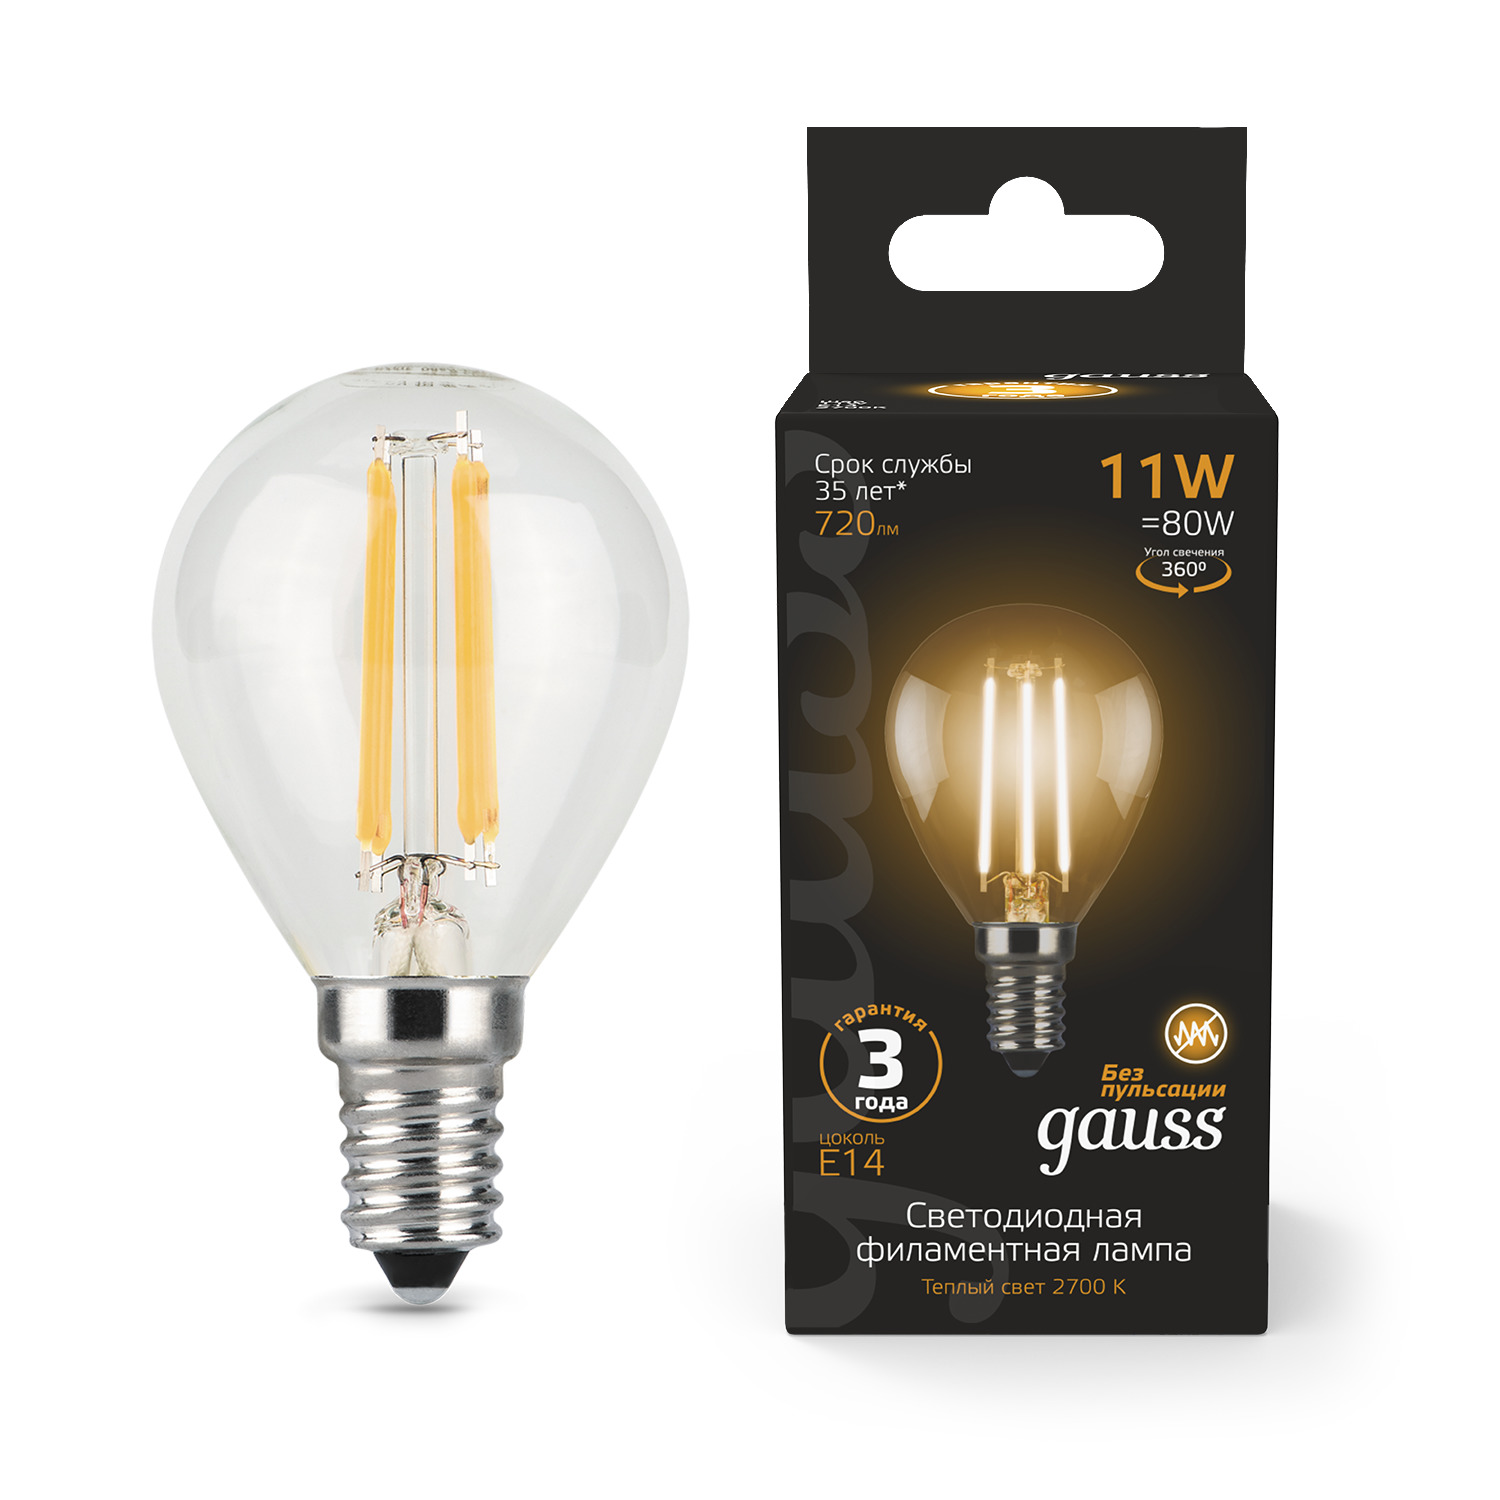 Упаковка ламп 10 штук Лампа Gauss Filament Шар 11W 810lm 2700К Е14 LED - купить в "GAUSS" Официальный магазин , цена на Мегамаркет